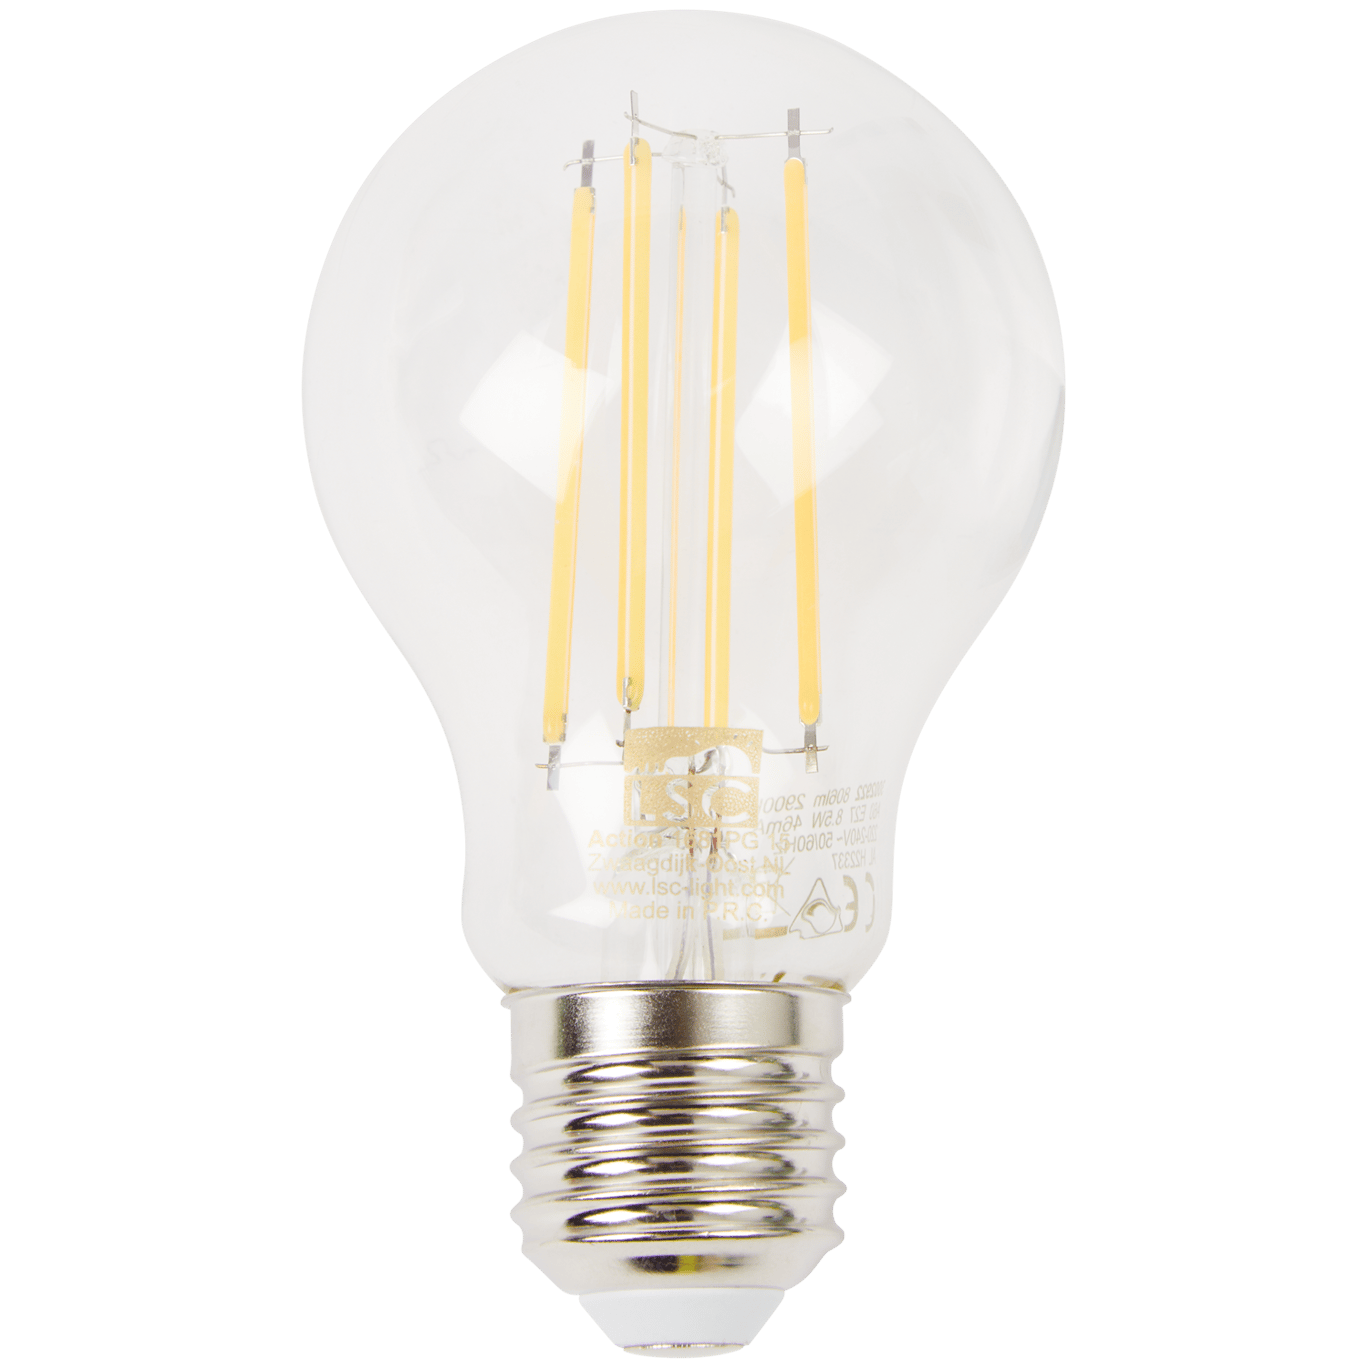 Vláknová LED žiarovka LSC